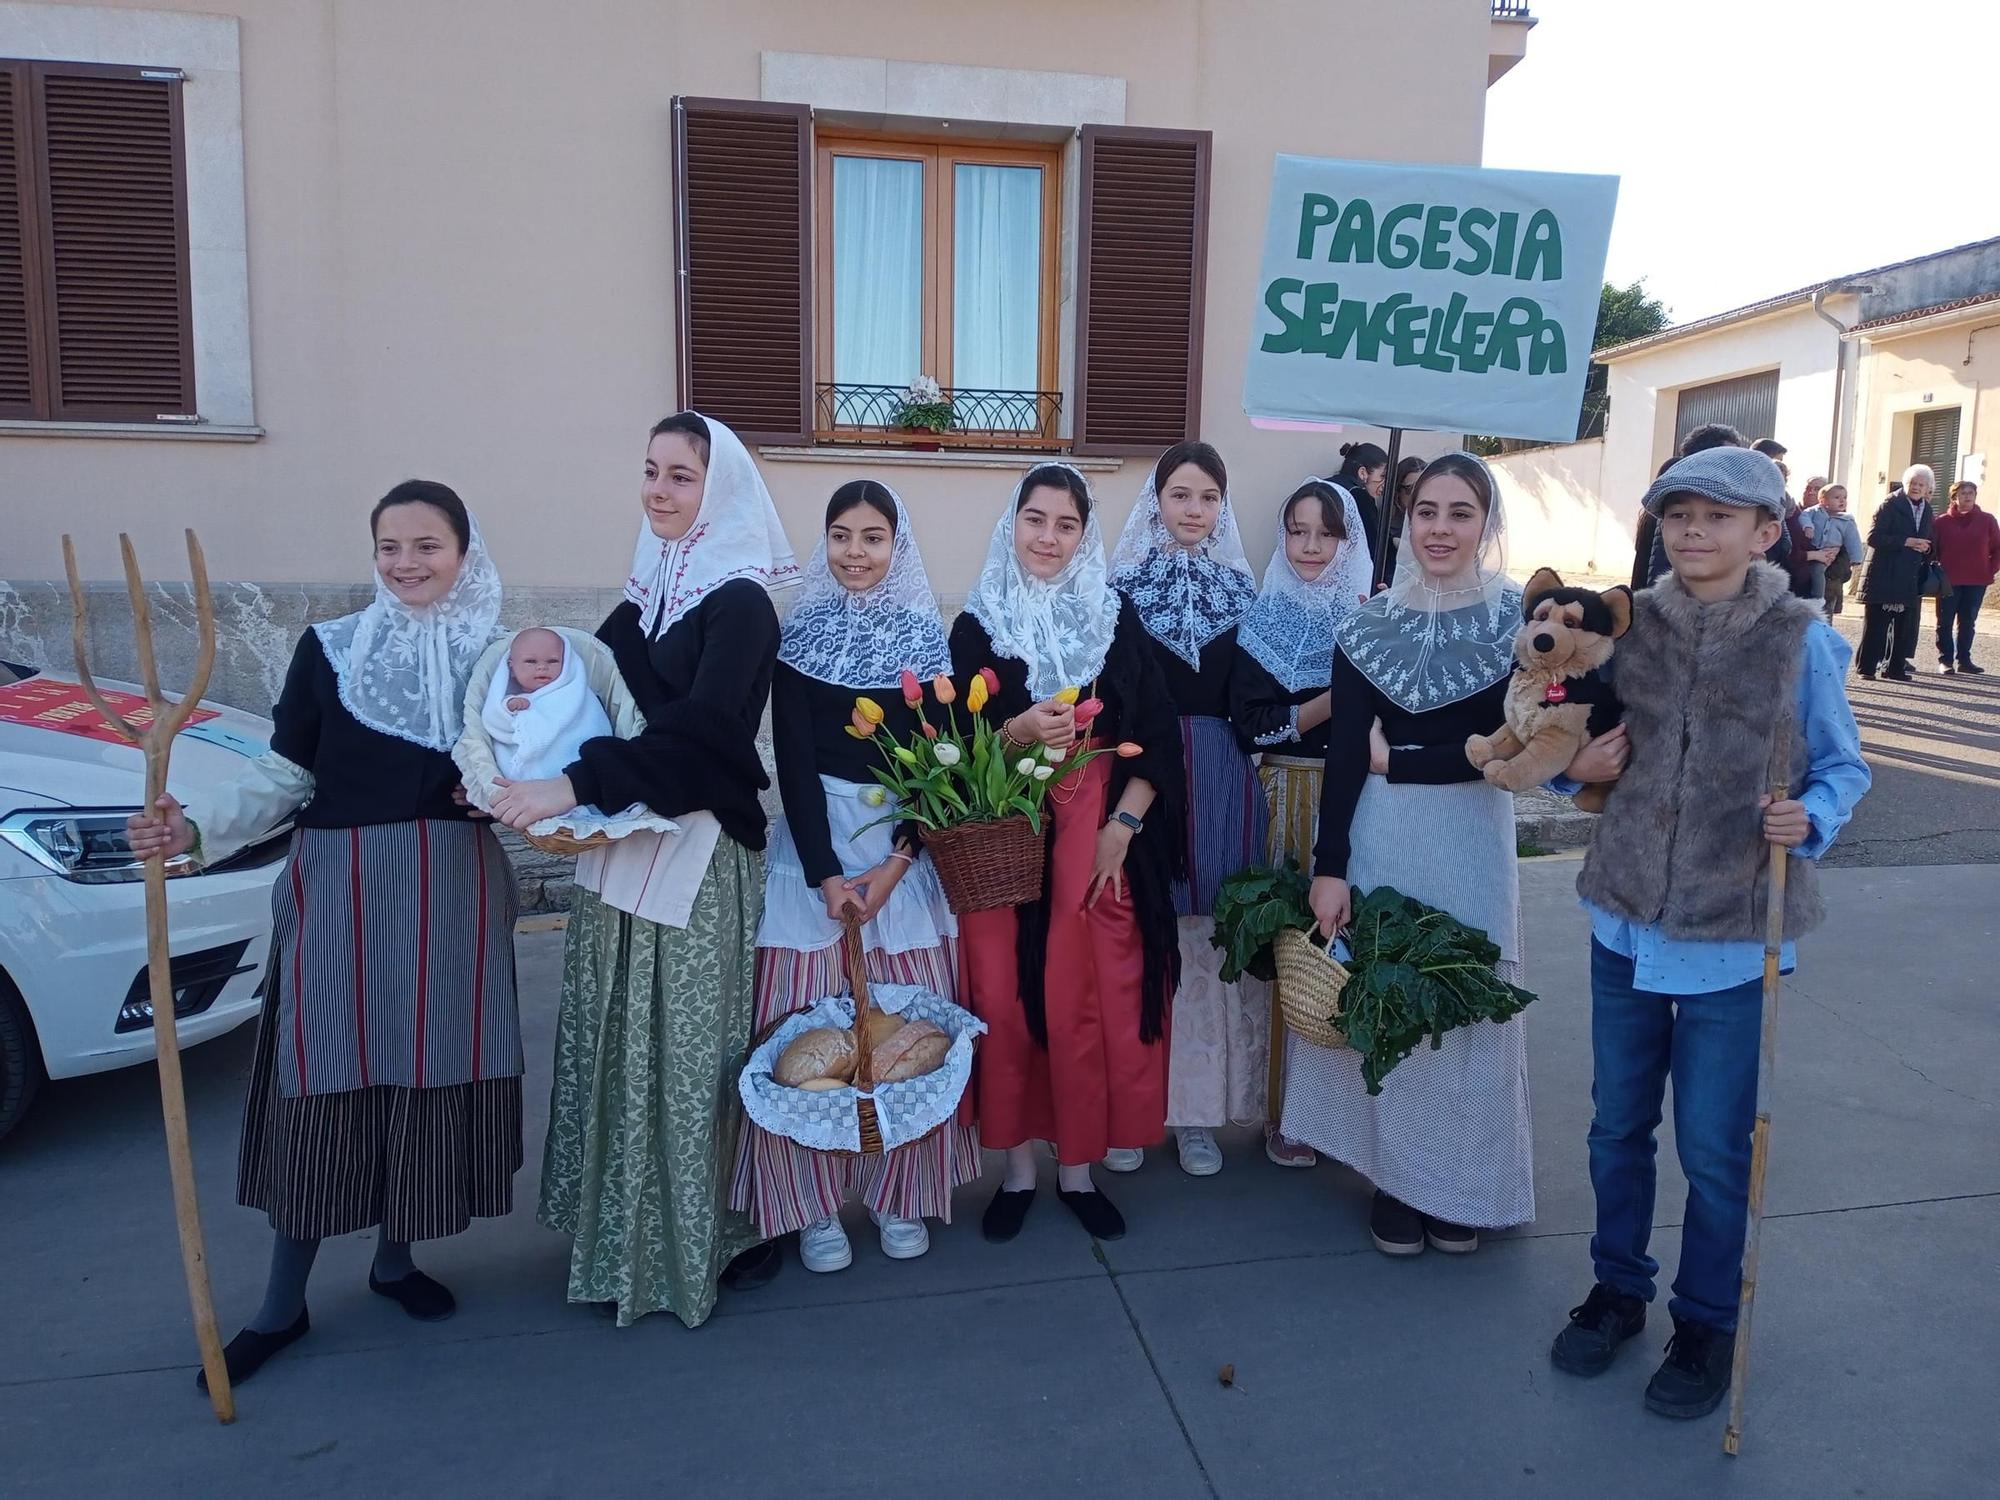 Sencelles | Las carrozas en honor a Santa Àgueda, en imágenes